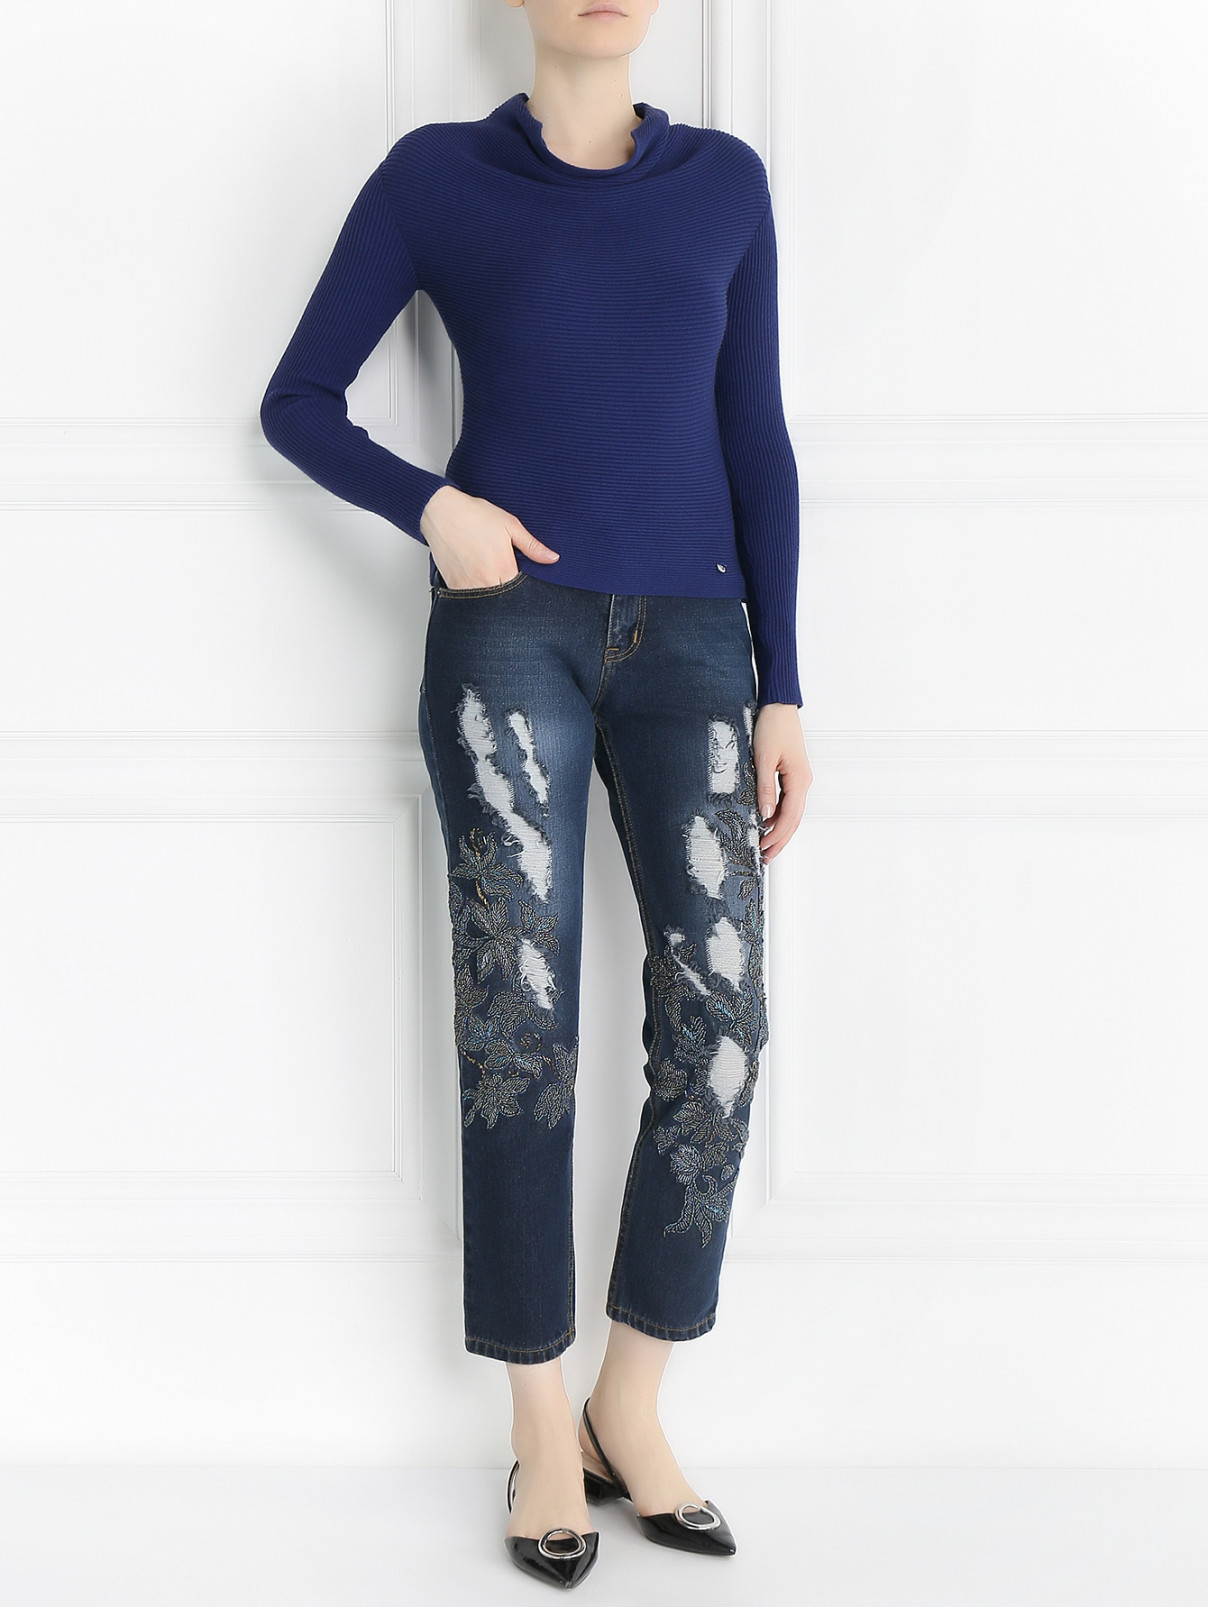 Укороченные джинсы с потертостями и вышивкой из бисера MAD Almadal  –  Модель Общий вид  – Цвет:  Синий